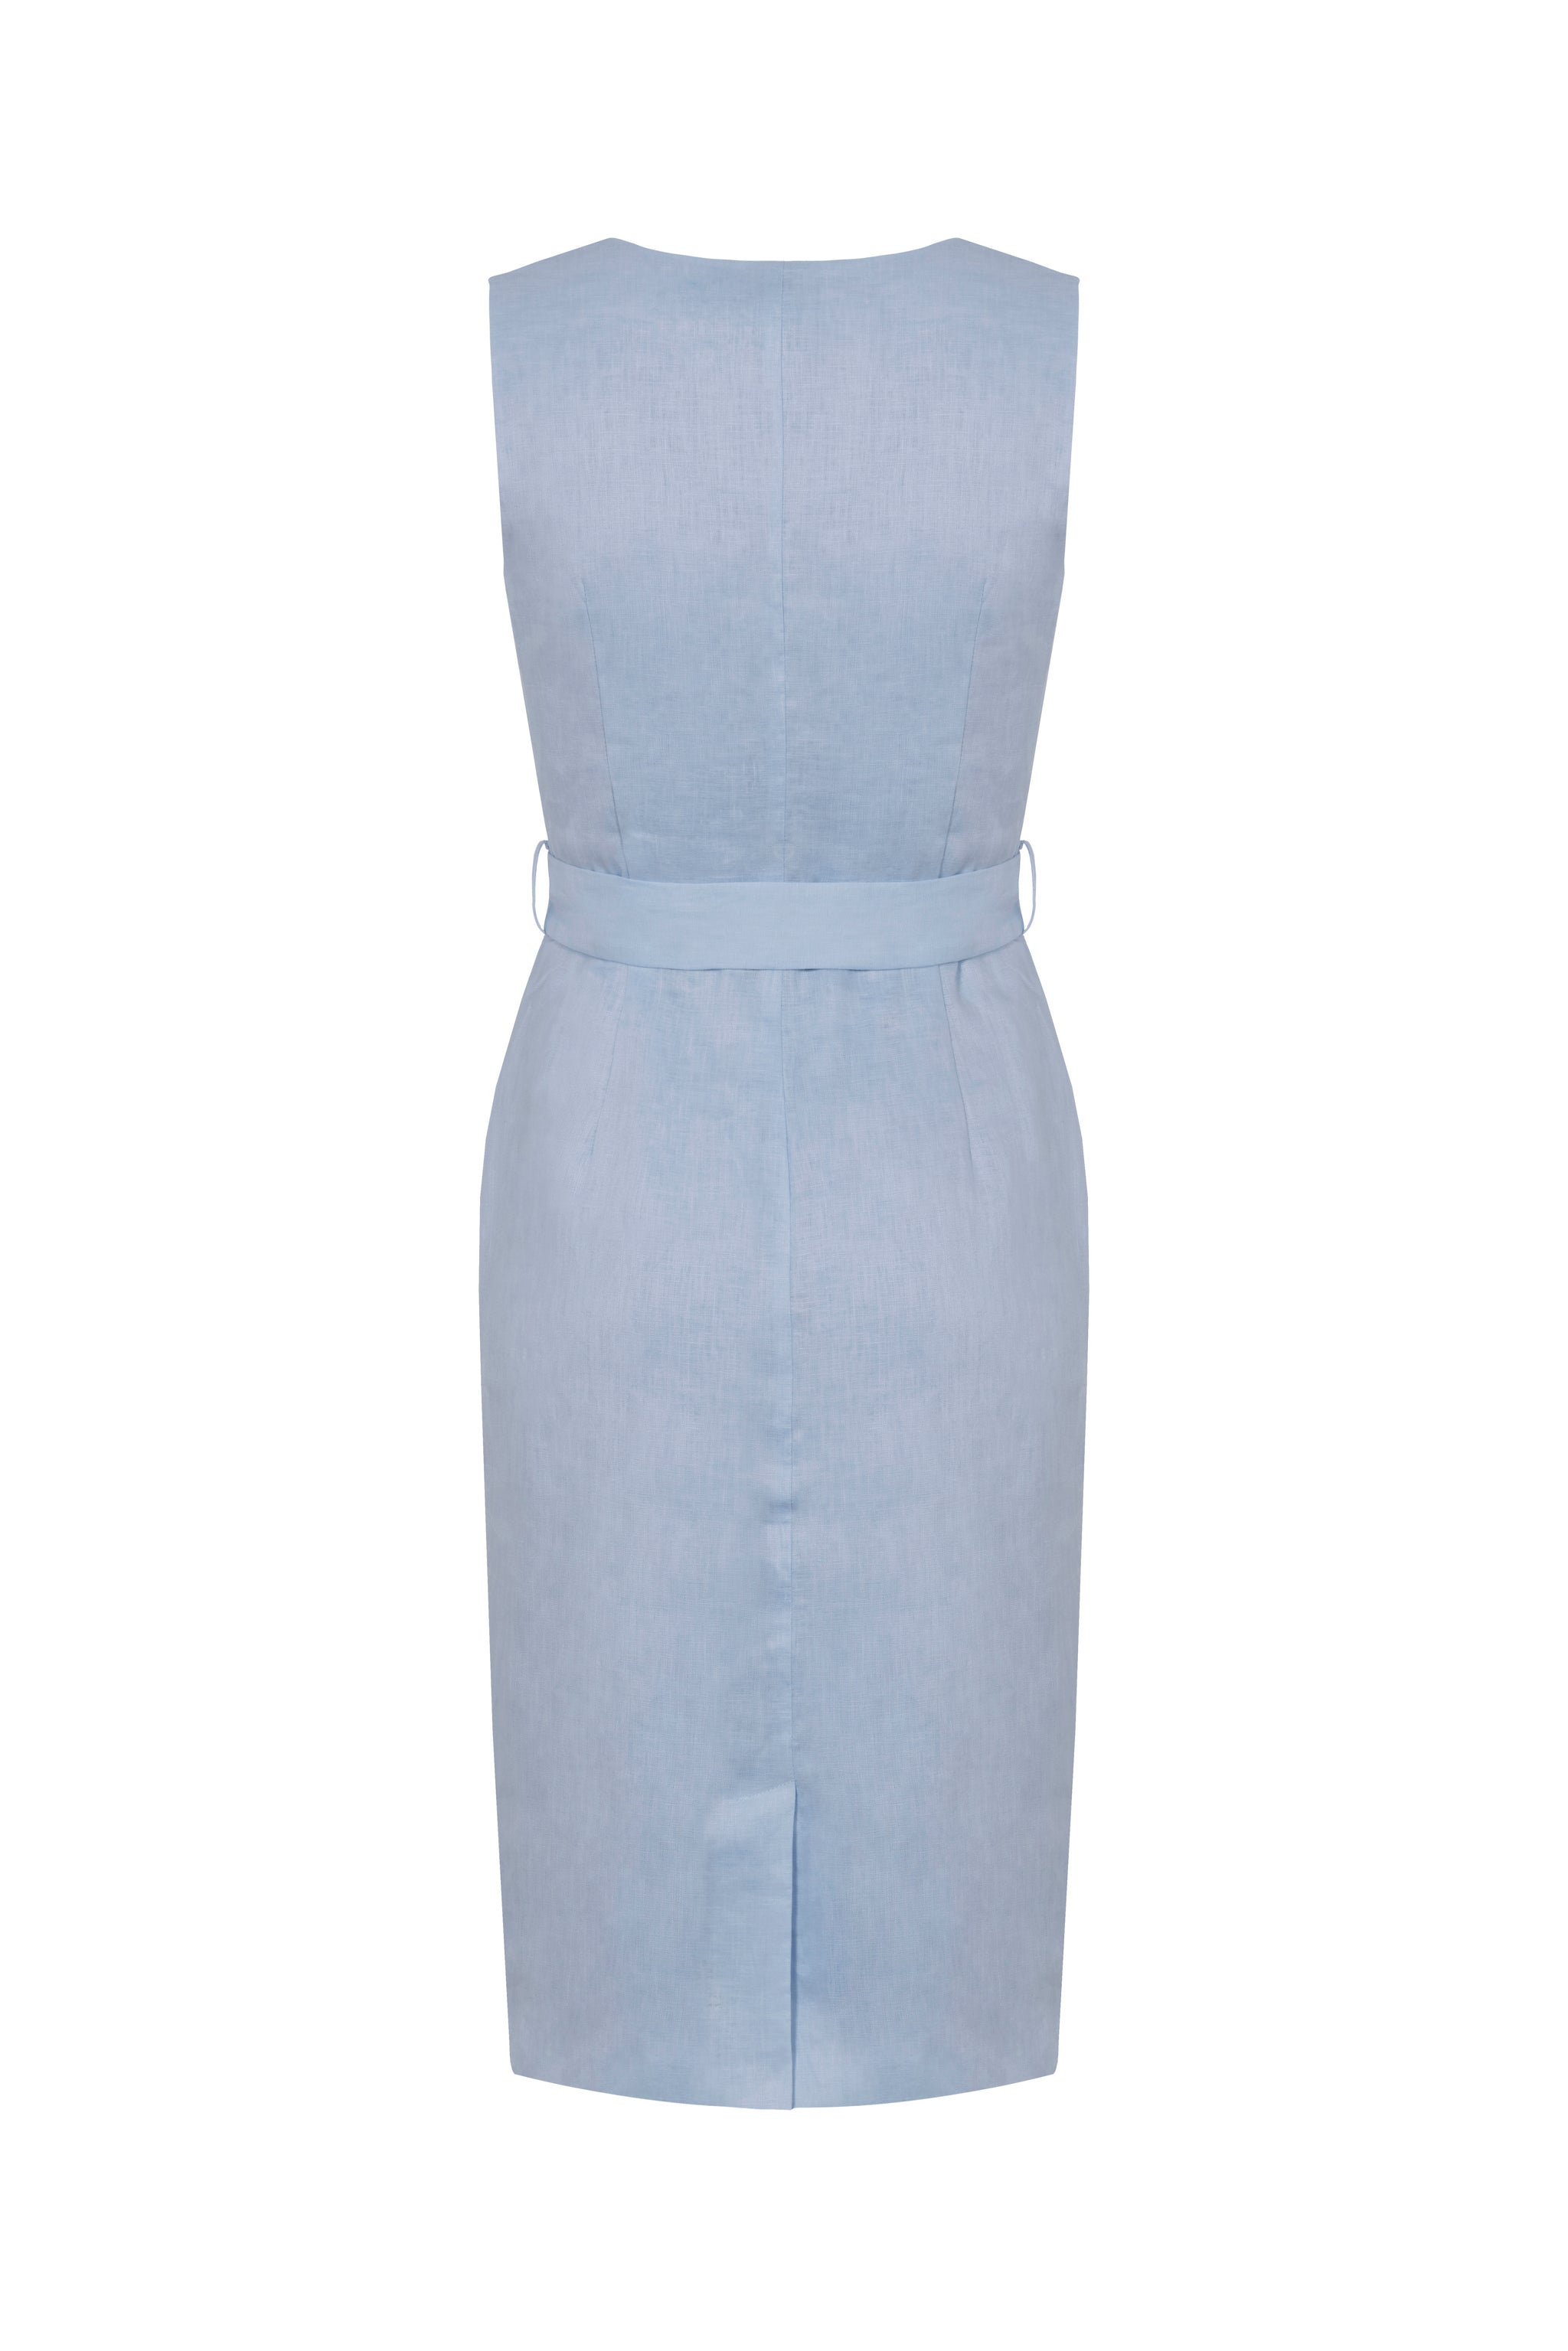 Linen Dress (Powder Blue)